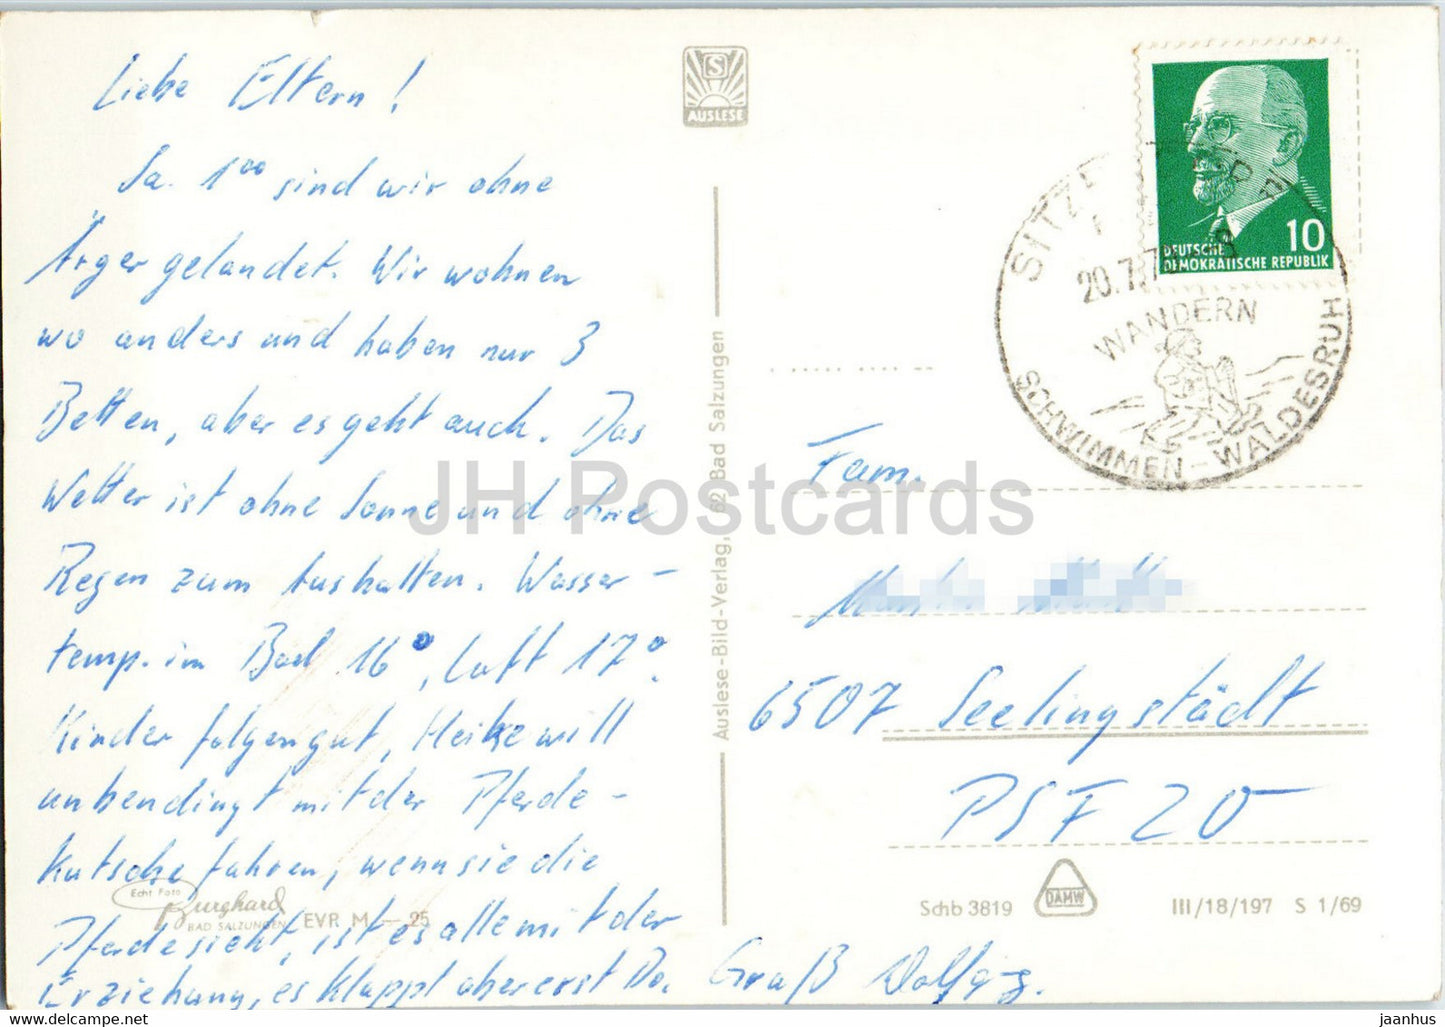 Schwarzburg im romantischen Schwarzatal - horse carriage - old postcard - Germany DDR - used